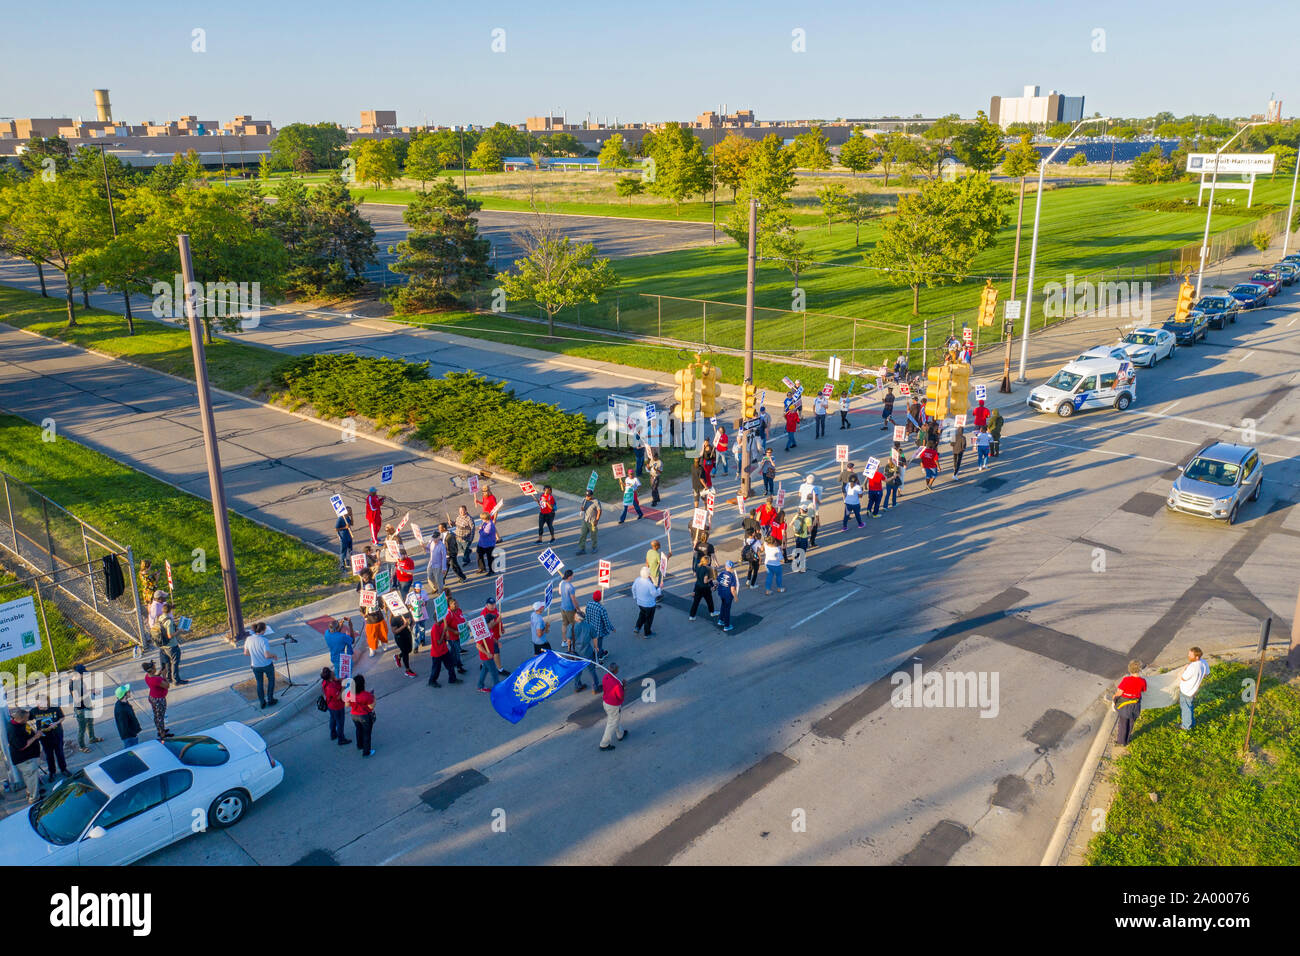 Detroit, Michigan STATI UNITI D'America - 18 settembre 2019 - La comunità i sostenitori e i membri di altri sindacati uniti il picchetto linee presso il Detroit-Hamtramck impianto di assemblaggio in solidarietà con 46.000 colpisce la General Motors lavoratori. La United Auto i lavoratori colpiti la società Settembre 16. La pianta Detroit-Hamtramck è uno di quelli che la GM ha affermato che intende chiudere. Lo sciopero di questioni principali includono chiusure impianto, salari, i due livelli struttura retributiva e assistenza sanitaria. Credito: Jim West/Alamy Live News Foto Stock